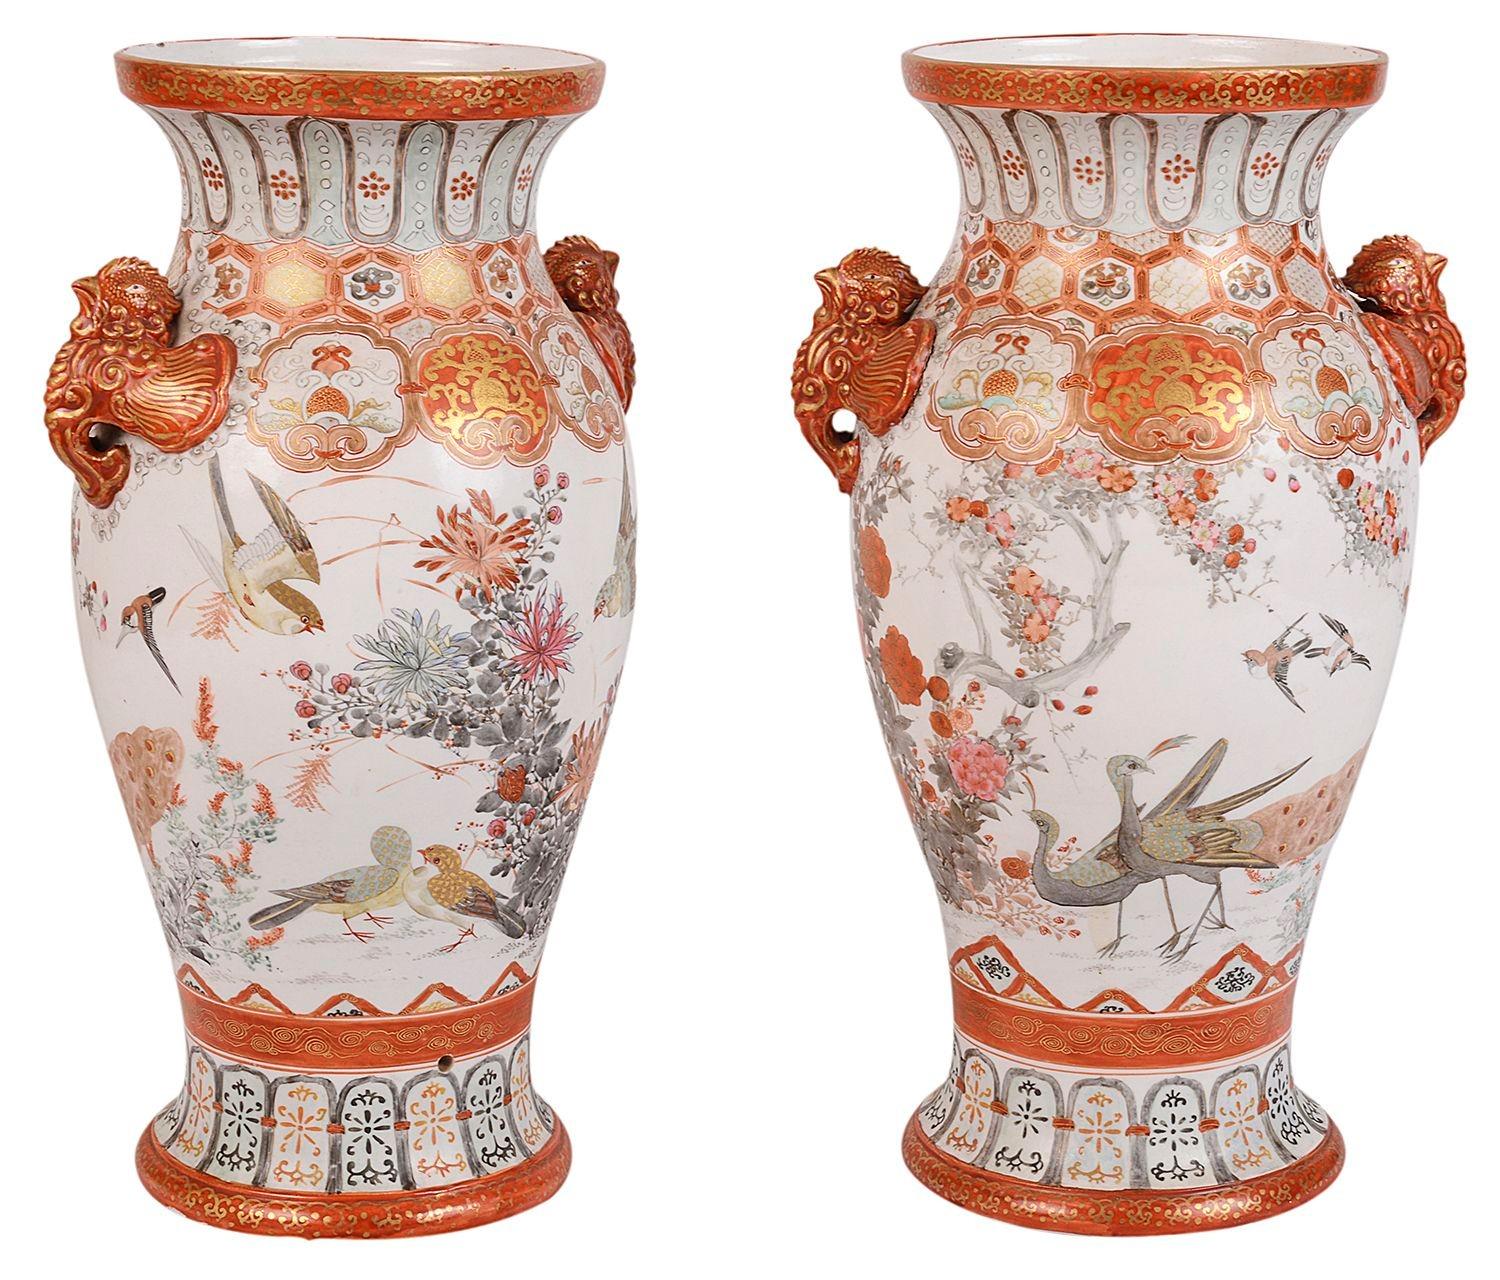 Une paire de vases / lampes Kutani japonais de la période Meiji (1868-1912) de très bonne qualité. Chacune est ornée d'un motif classique, de fleurs et d'oiseaux exotiques et de poignées de part et d'autre. Signé à la base.
 
 
Lot 72 (18)